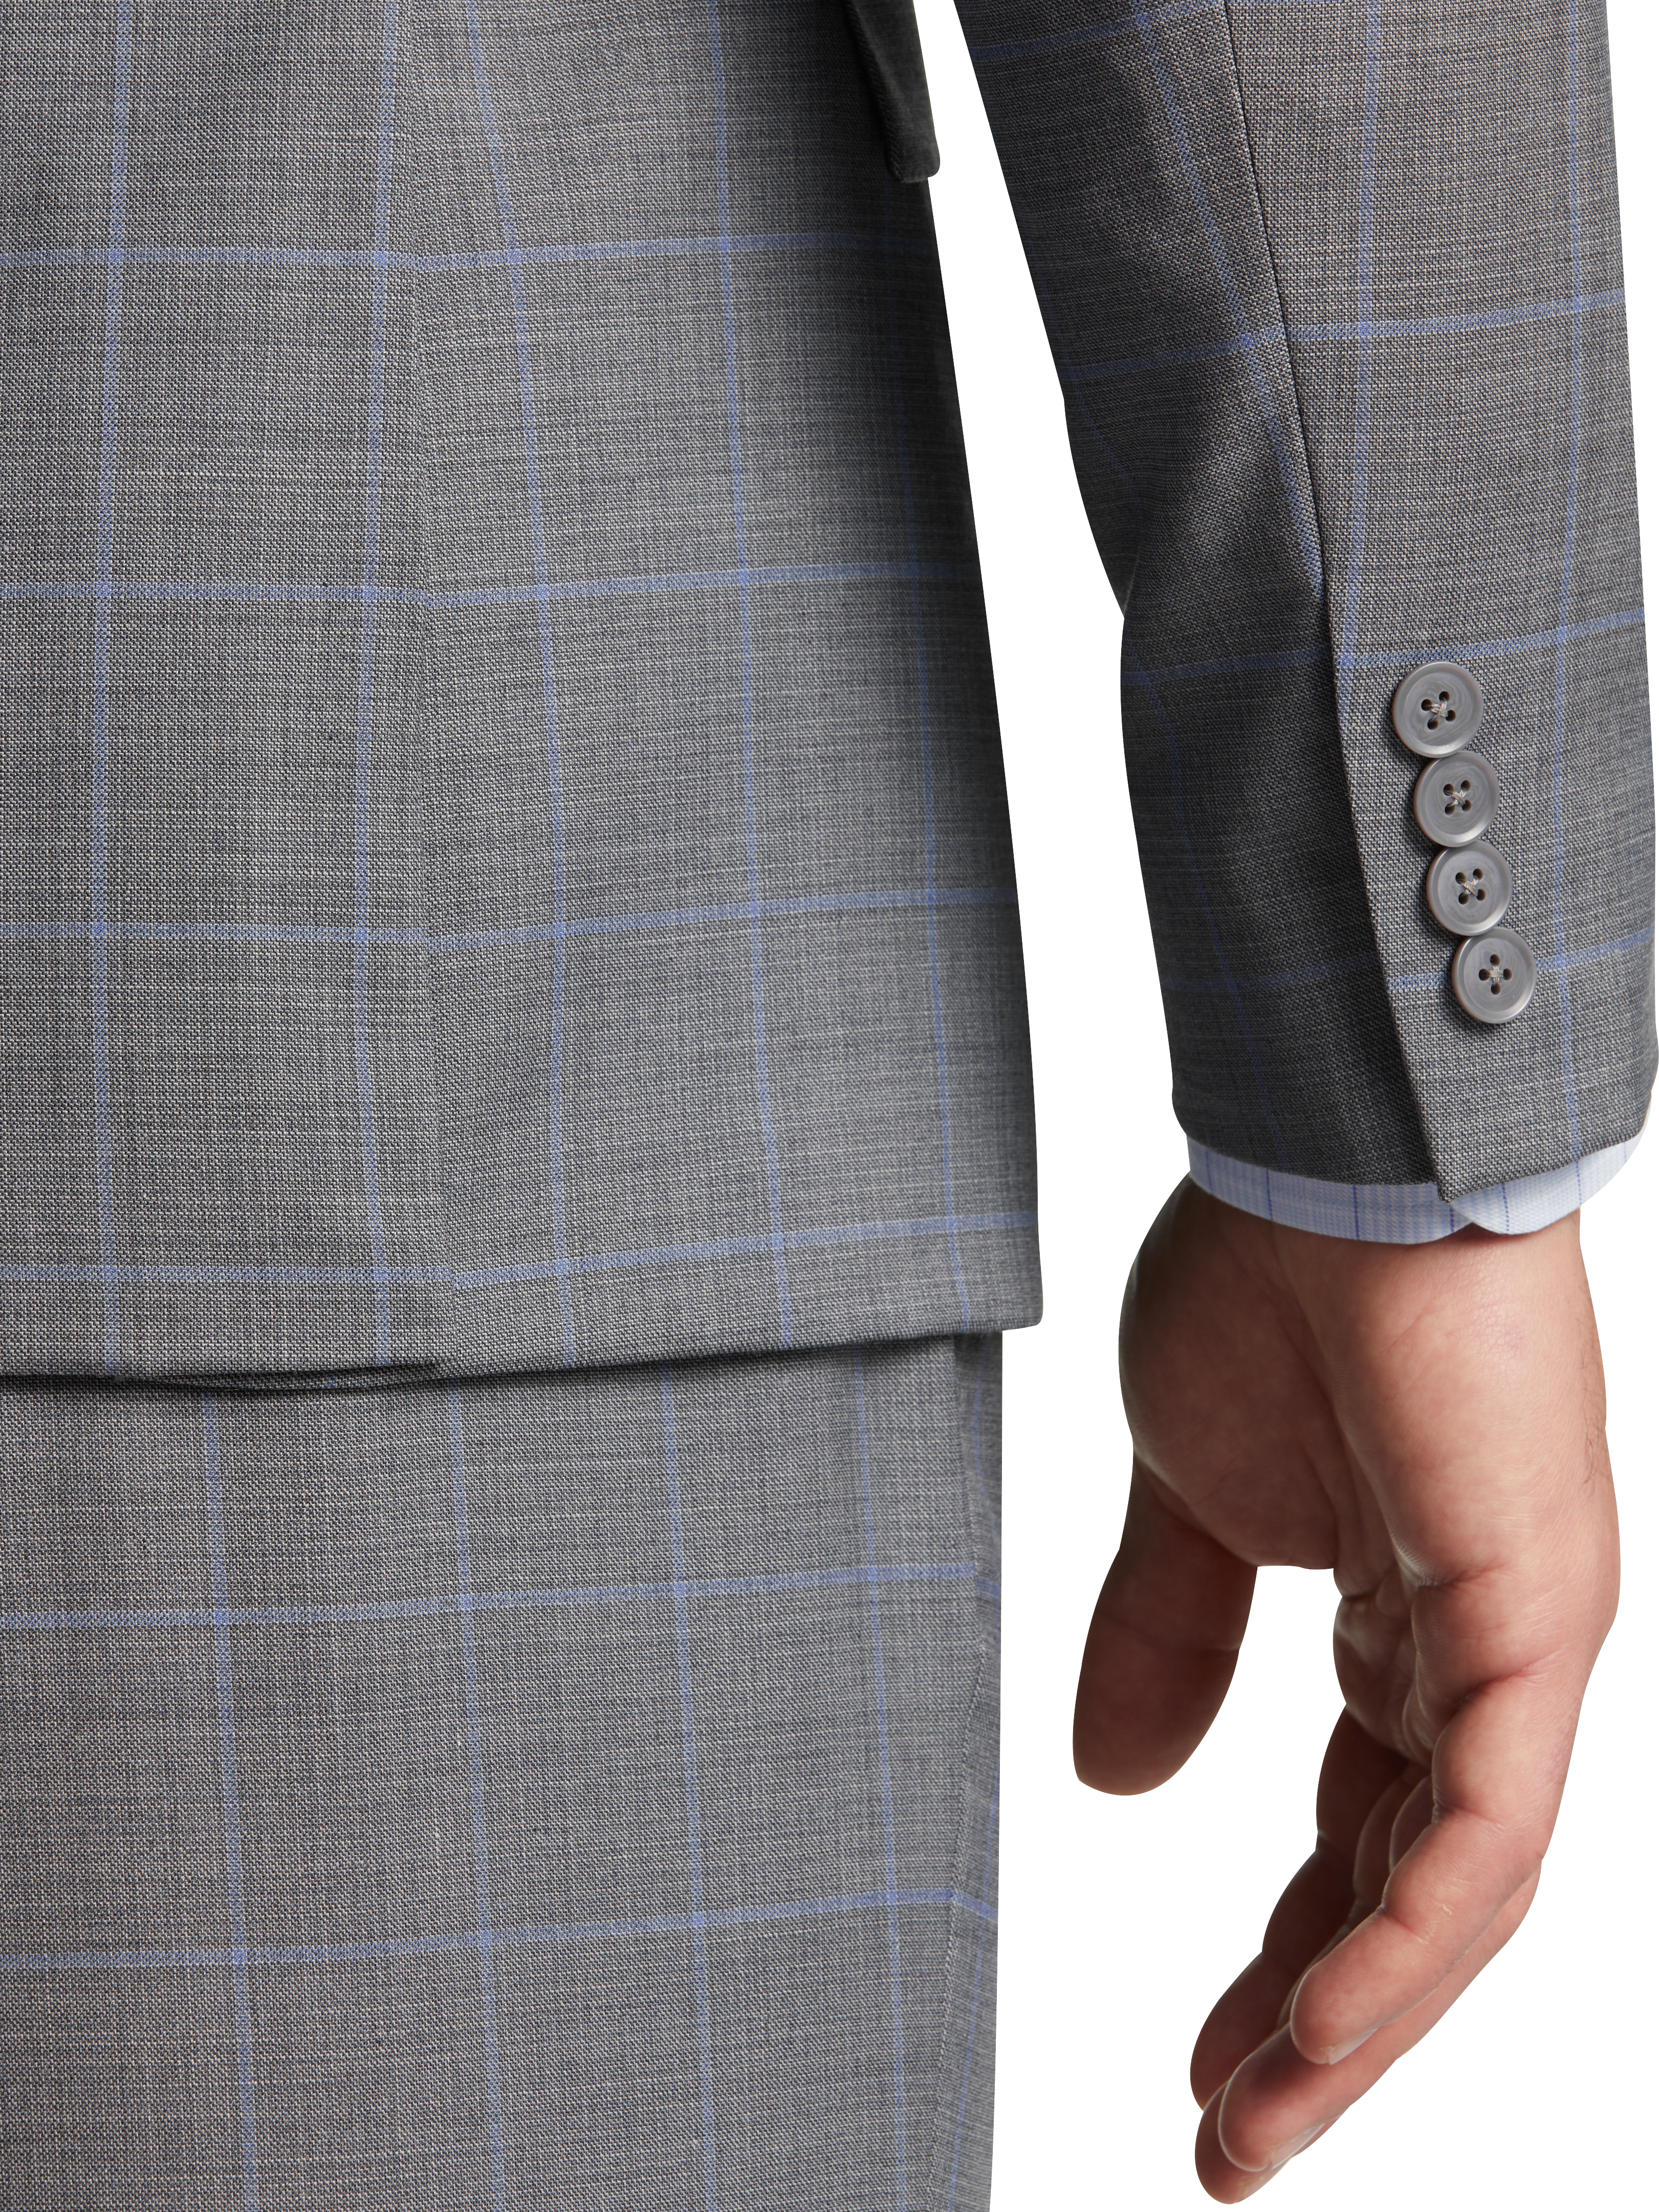 Classic Fit Notch Lapel Suit Separates Jacket